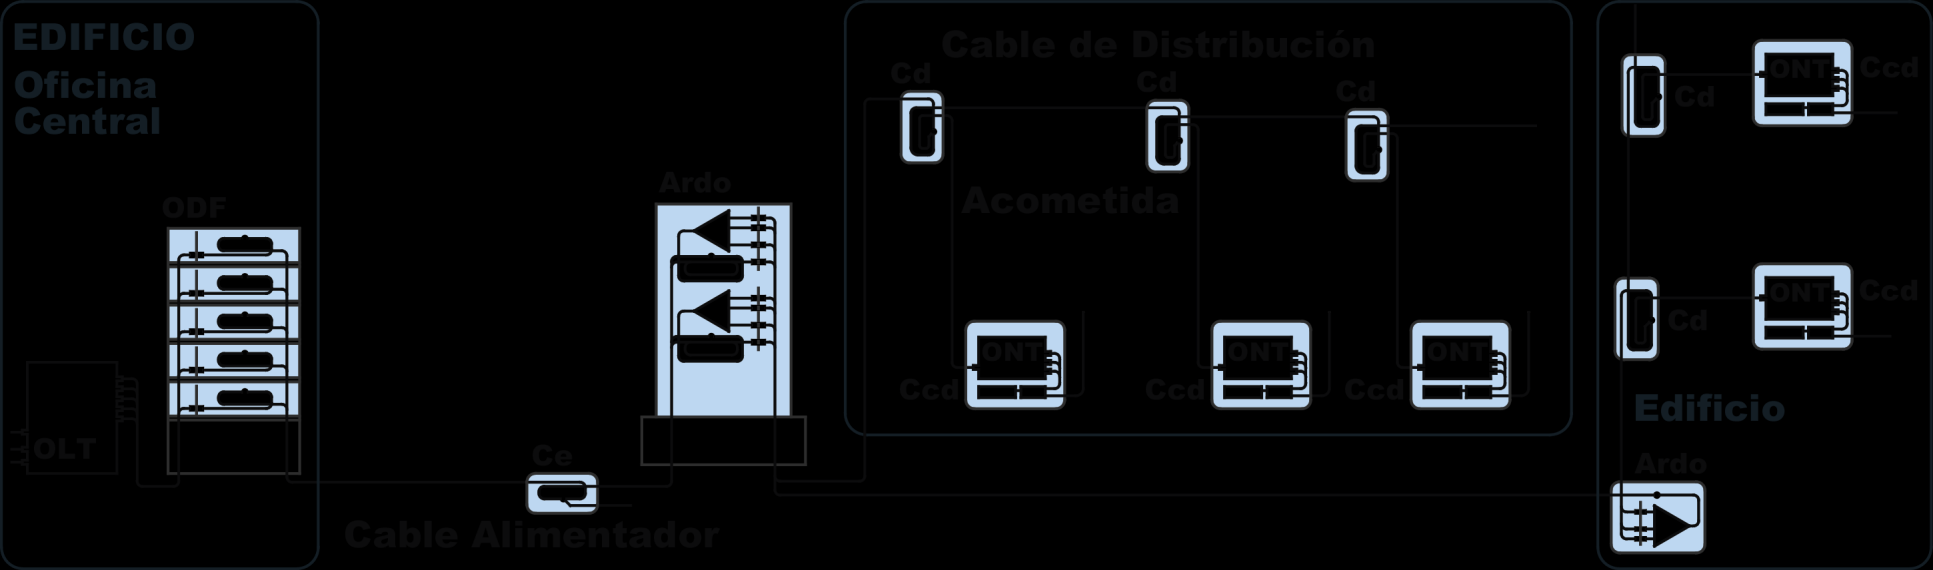 Red de Acceso PON Conecta los terminales a la red de telecomunicaciones a través del nodo